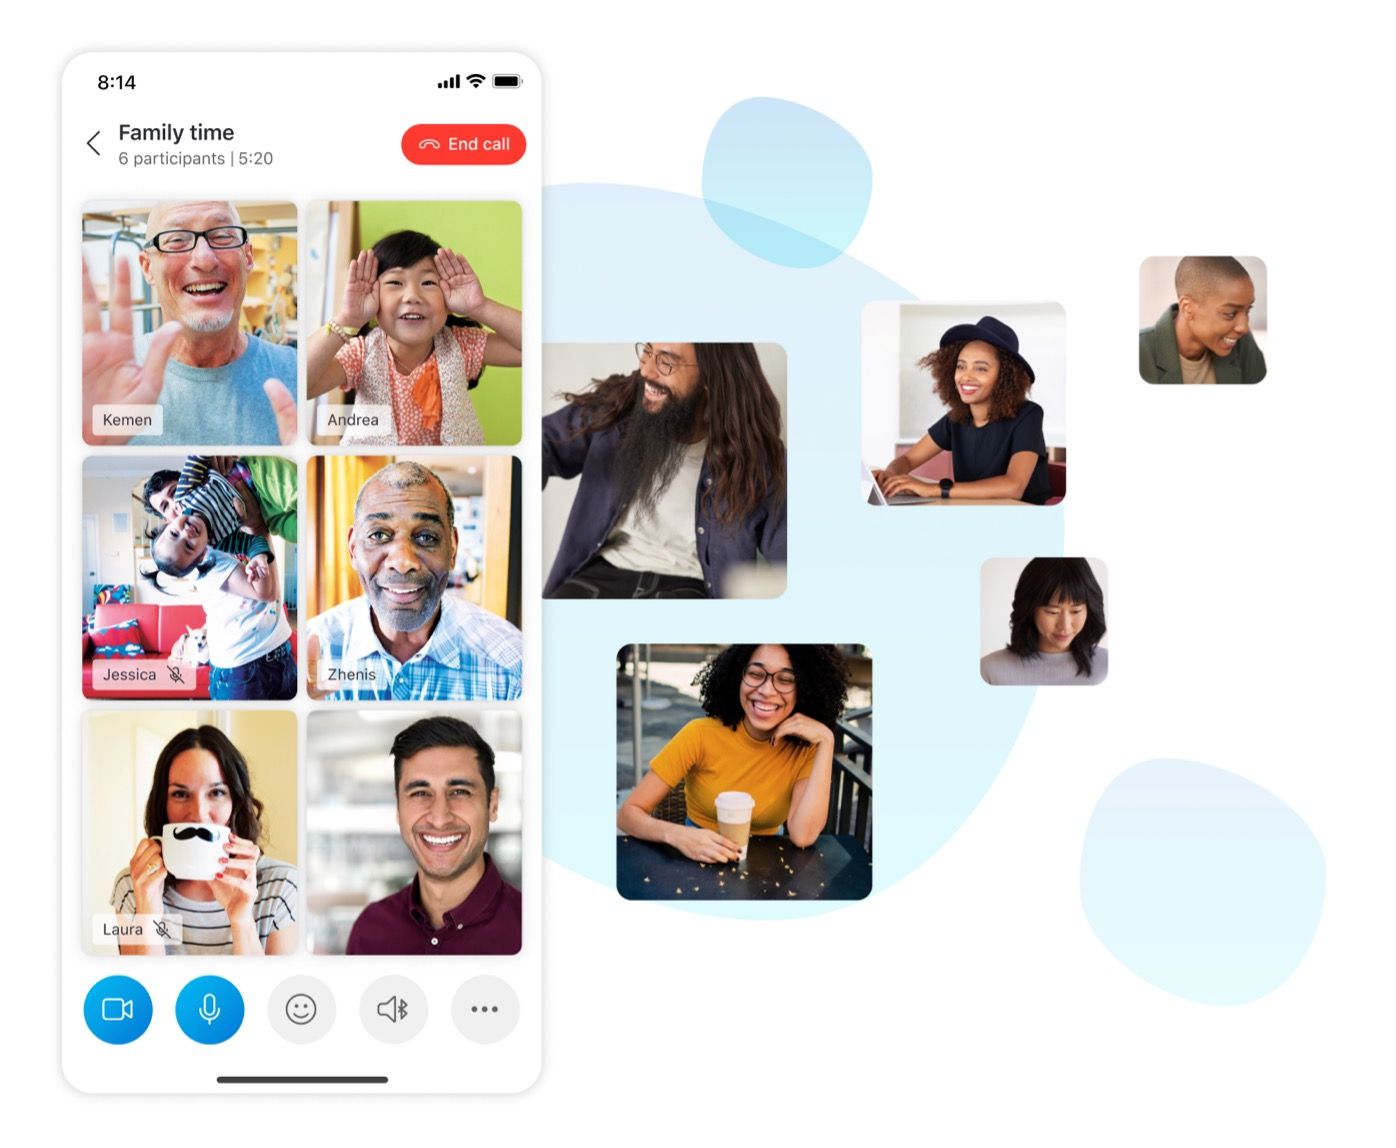 Ein Screenshot der Anrufphase in der mobilen Skype-App neben Video-Feeds von anderen Benutzern, der die Fähigkeit der App darstellt, das Layout anzupassen, wenn mehr Benutzer Video aktivieren